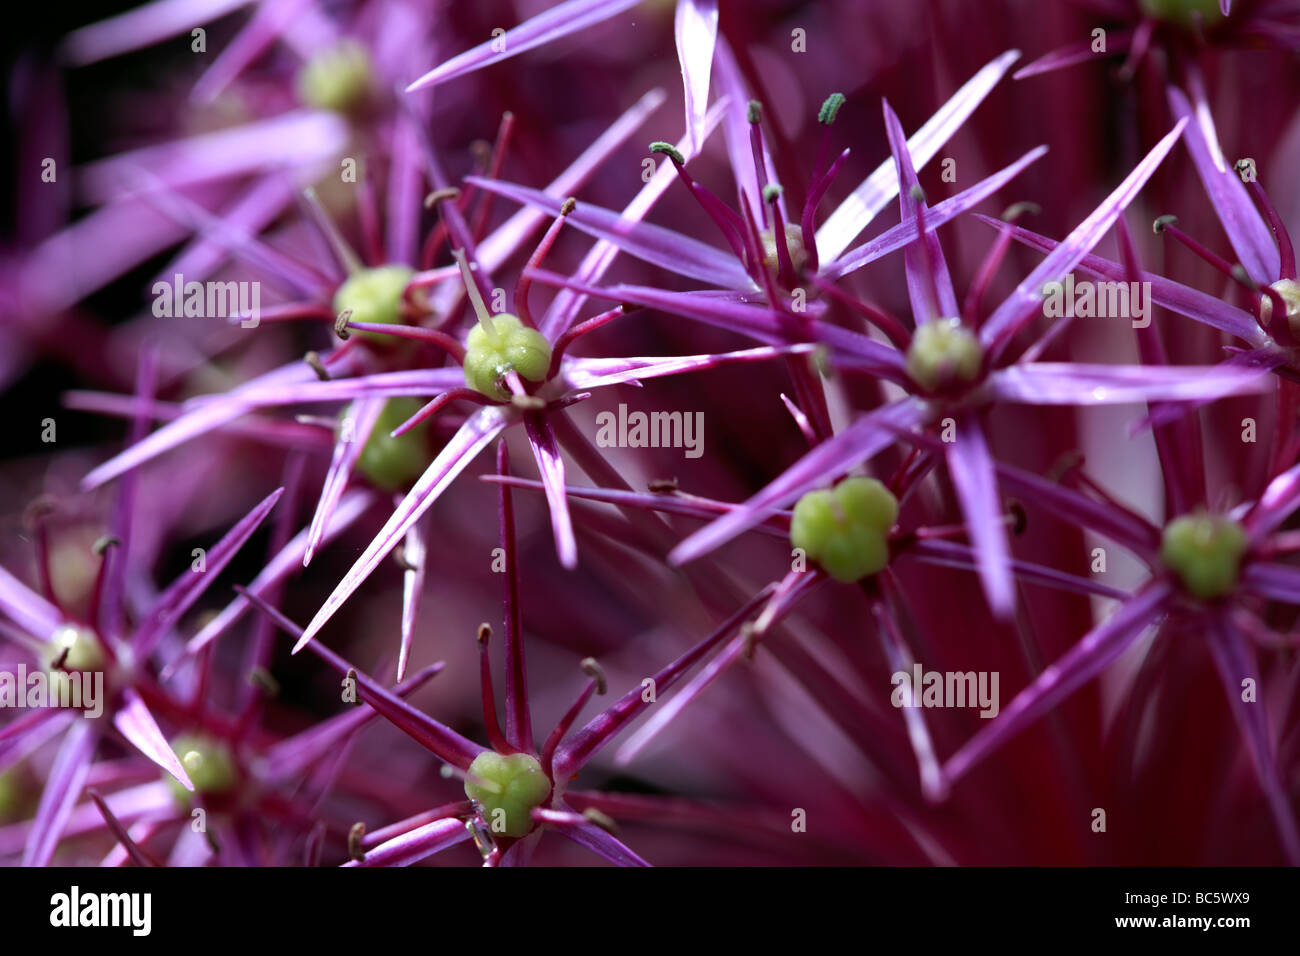 Chiusura del piccolo starshaped che compongono un AlliumPurple Foto Stock